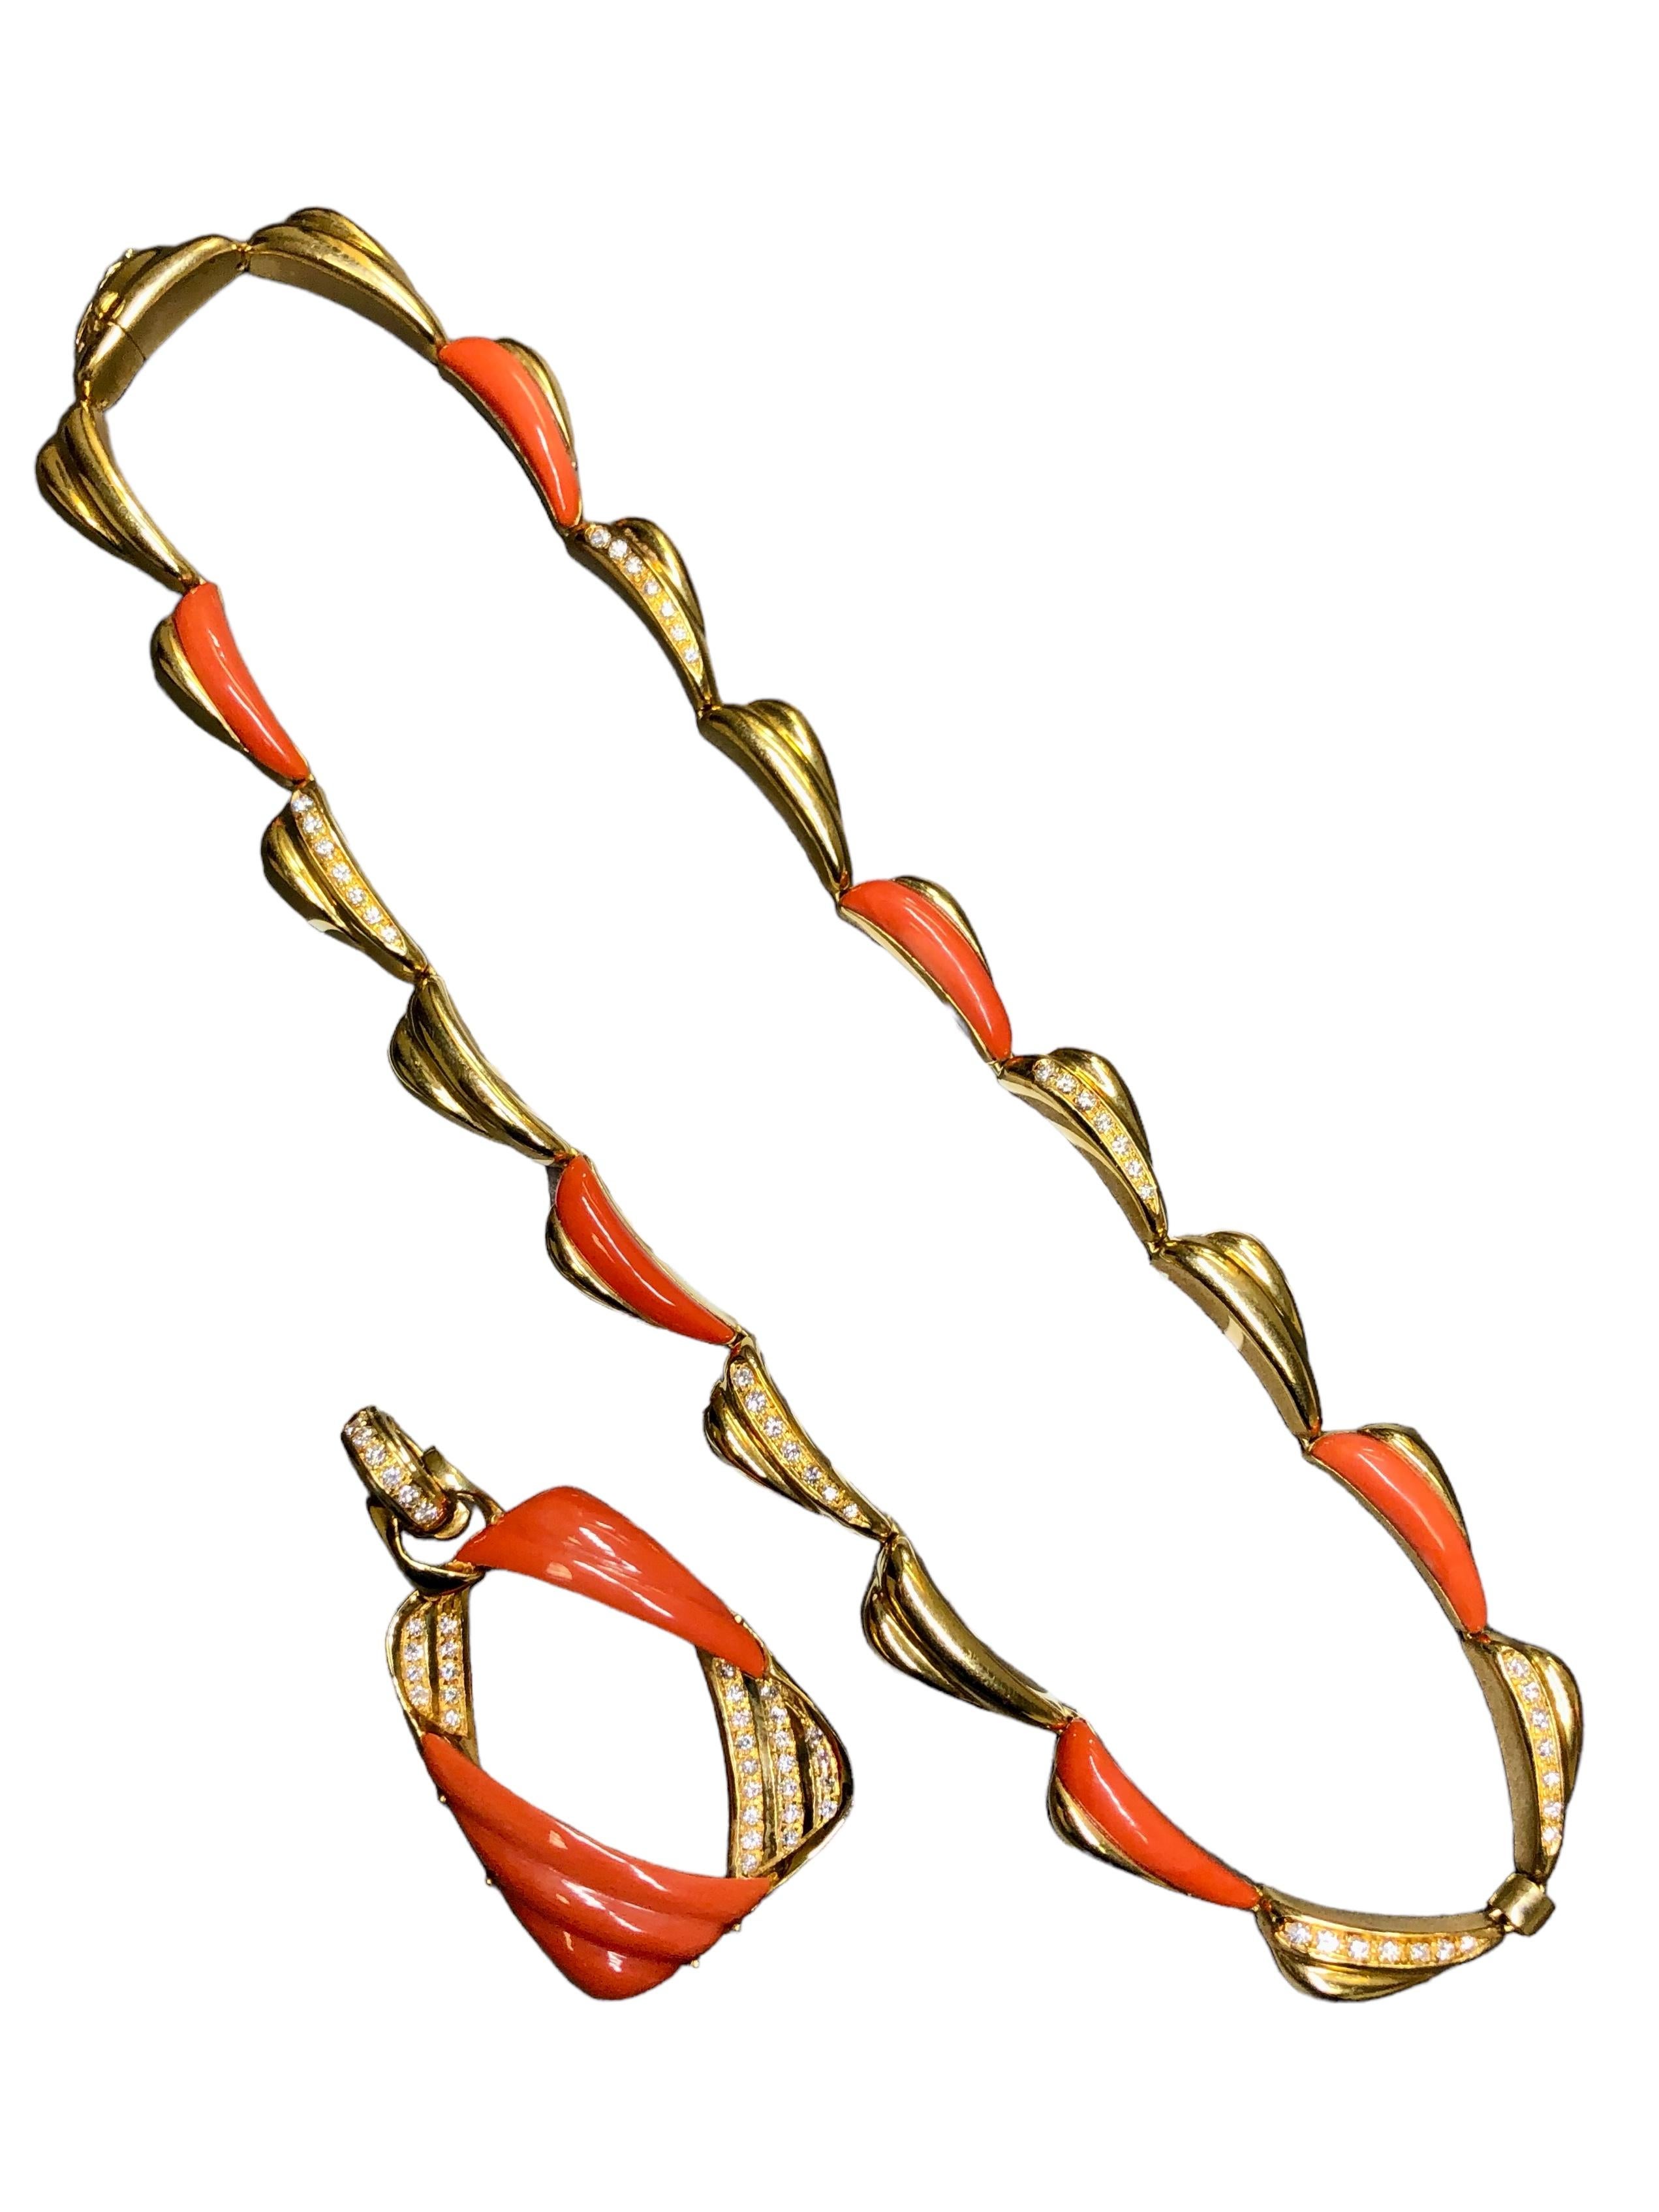 
Un magnifique collier italien en or jaune 18 carats avec des coraux sculptés parfaitement assortis et des diamants ronds de couleur F-G et de pureté Vs1-2 d'une valeur approximative de 1,42cttw. Le pendentif se sépare du collier pour que vous